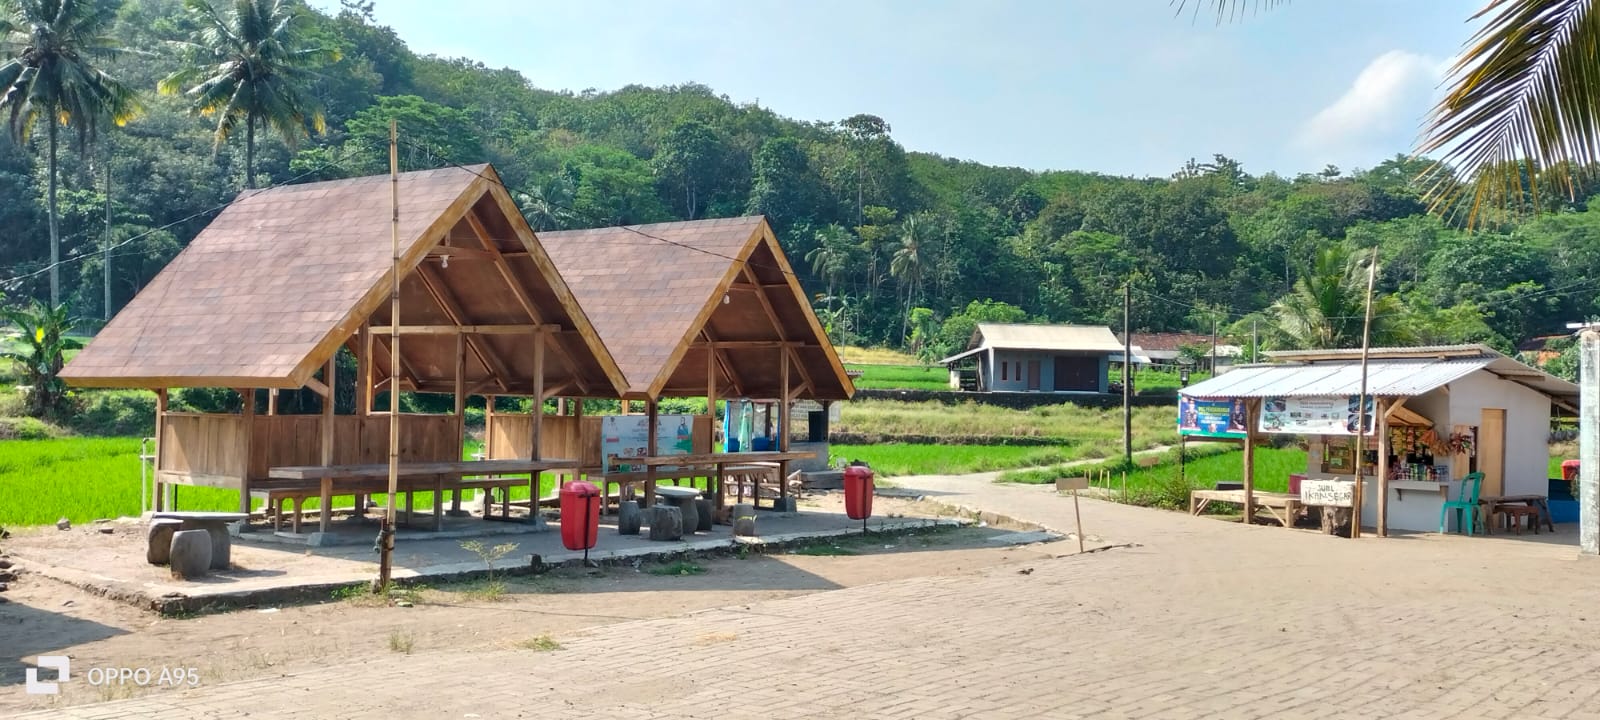 Pantai Citarate Destinasi Wisata di Banten Selatan, Perpadudan  Alam Pedesaan  dan Pantai  Yang Menawan Bantengate.id